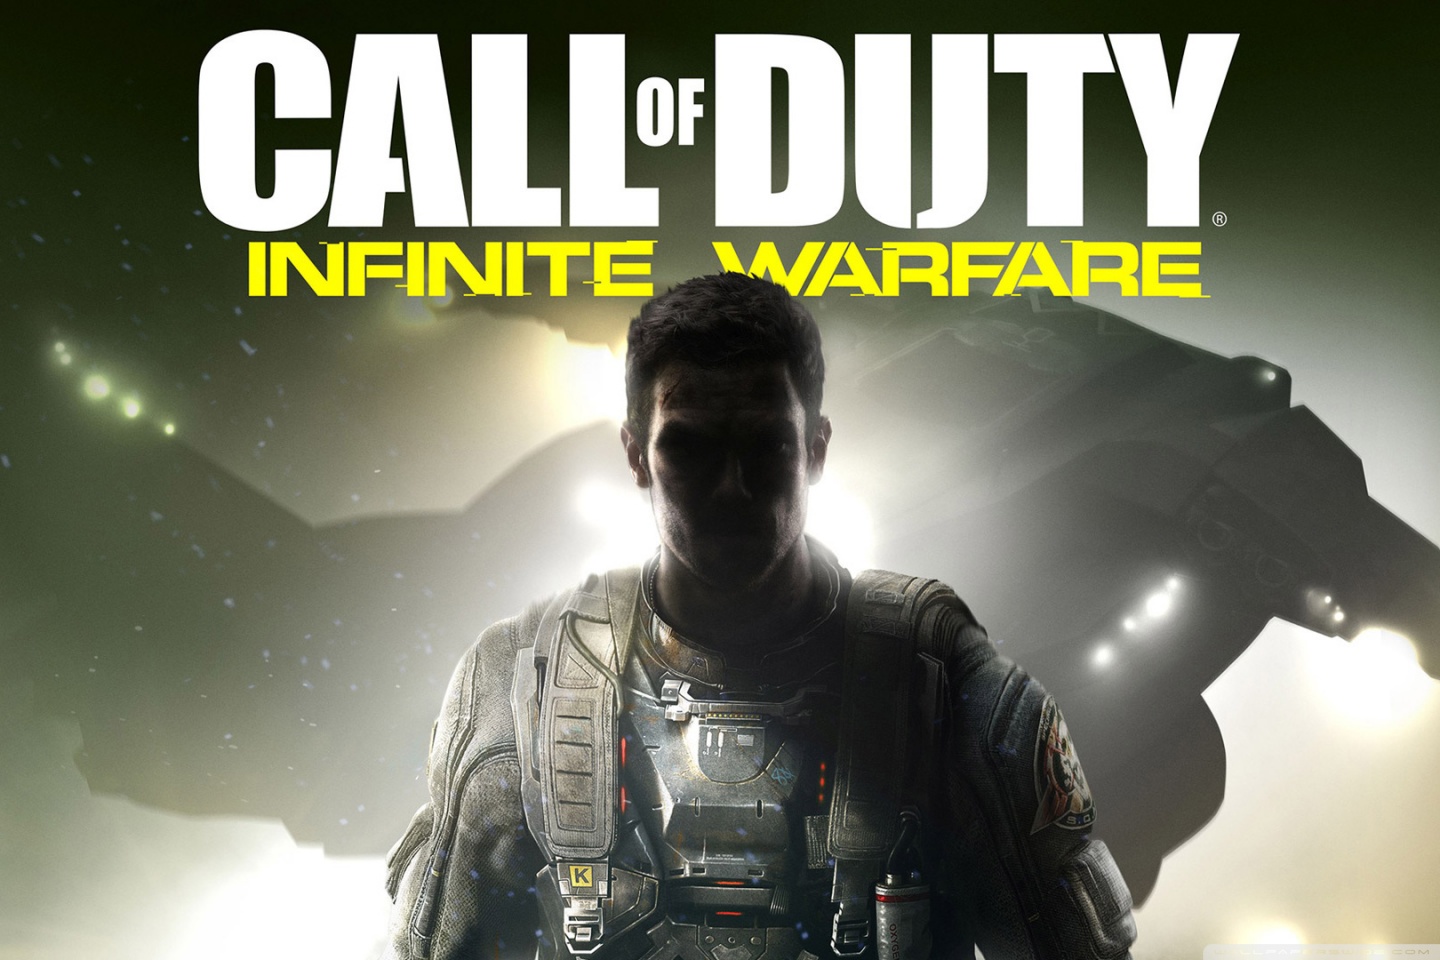 Call Of Duty Infinite Warfare Keyart Ultra HD Desktop Background Wallpaper for 4K UHD TV, Widescreen & UltraWide Desktop & Laptop, Tablet